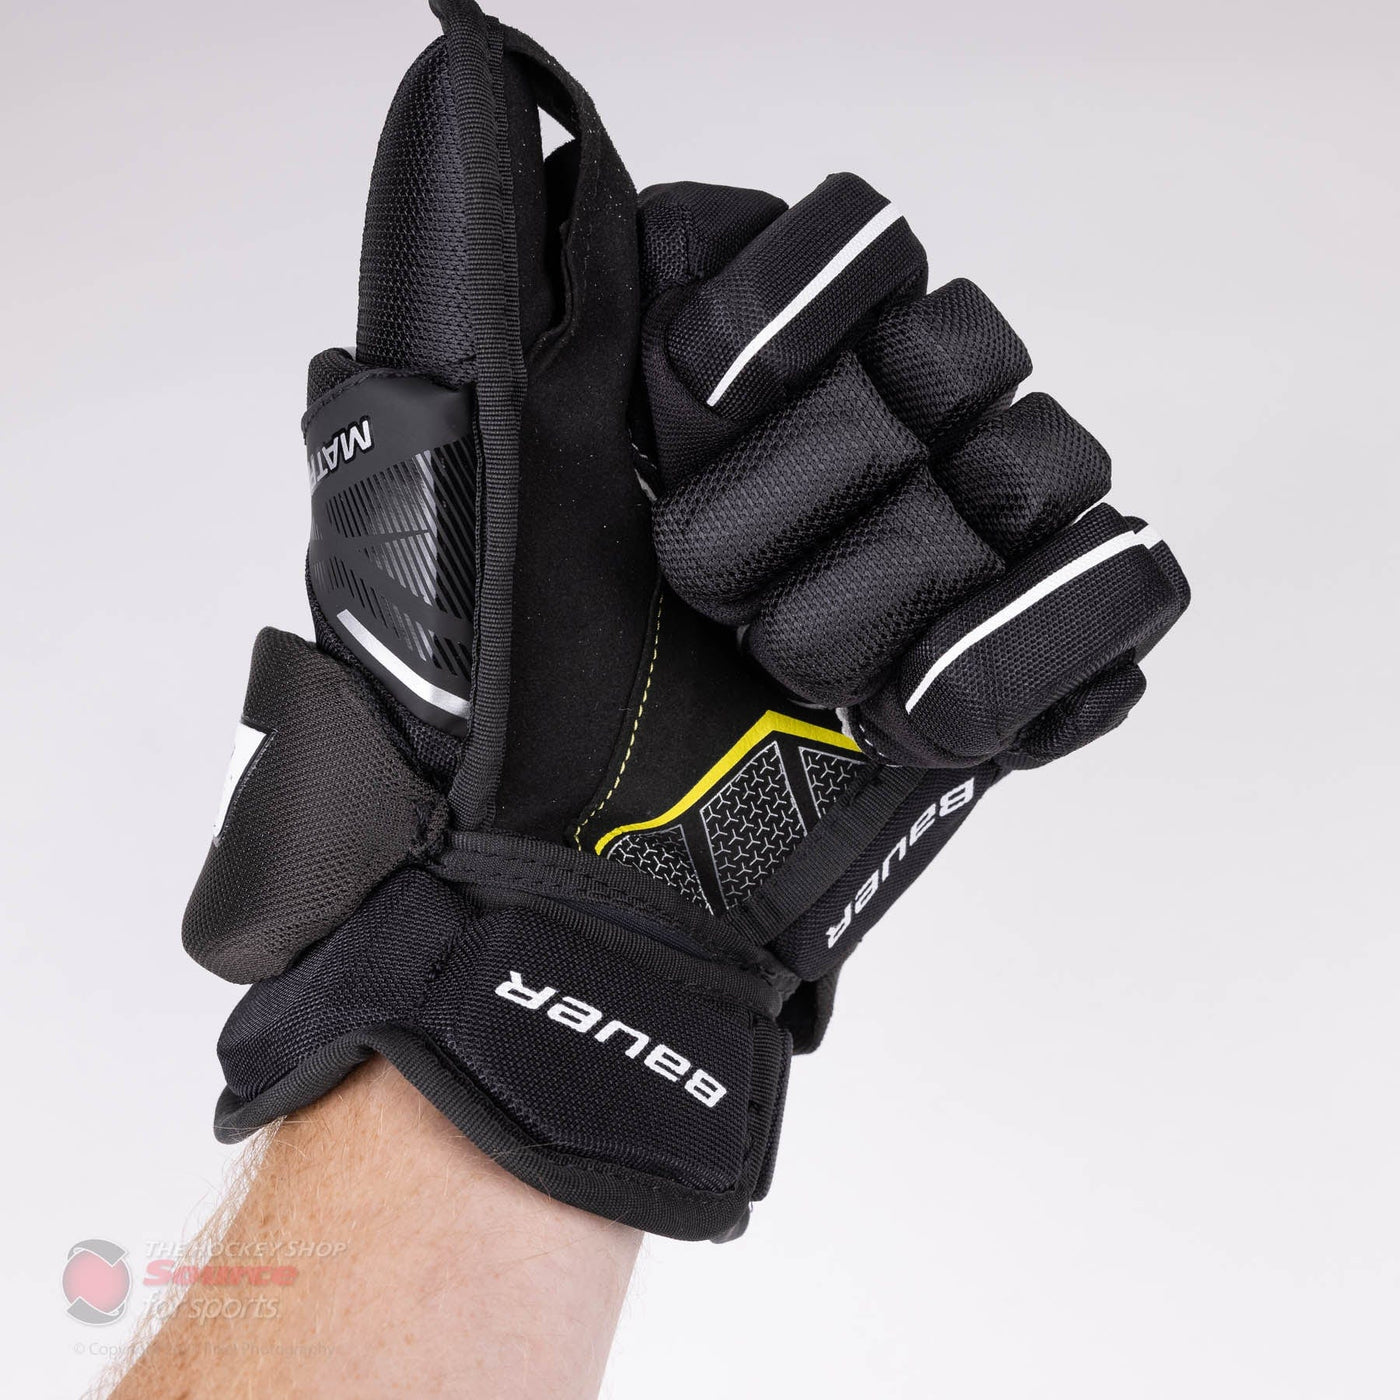 Bauer Supreme Matrix Intermediate Hockey Gloves